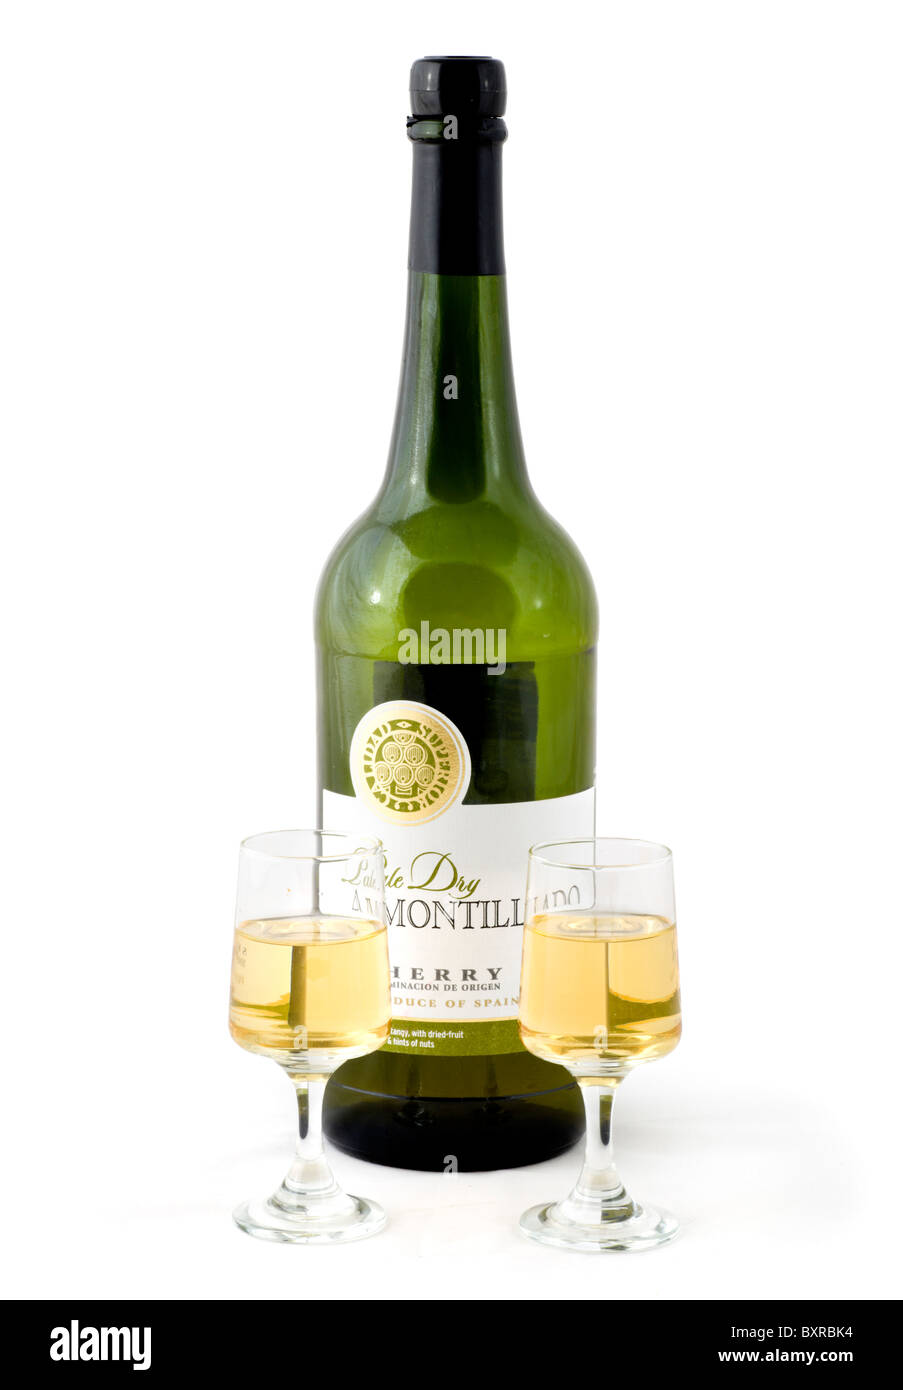 Botella de Pale Dry Amontillado Jerez y dos copas, REINO UNIDO Foto de stock